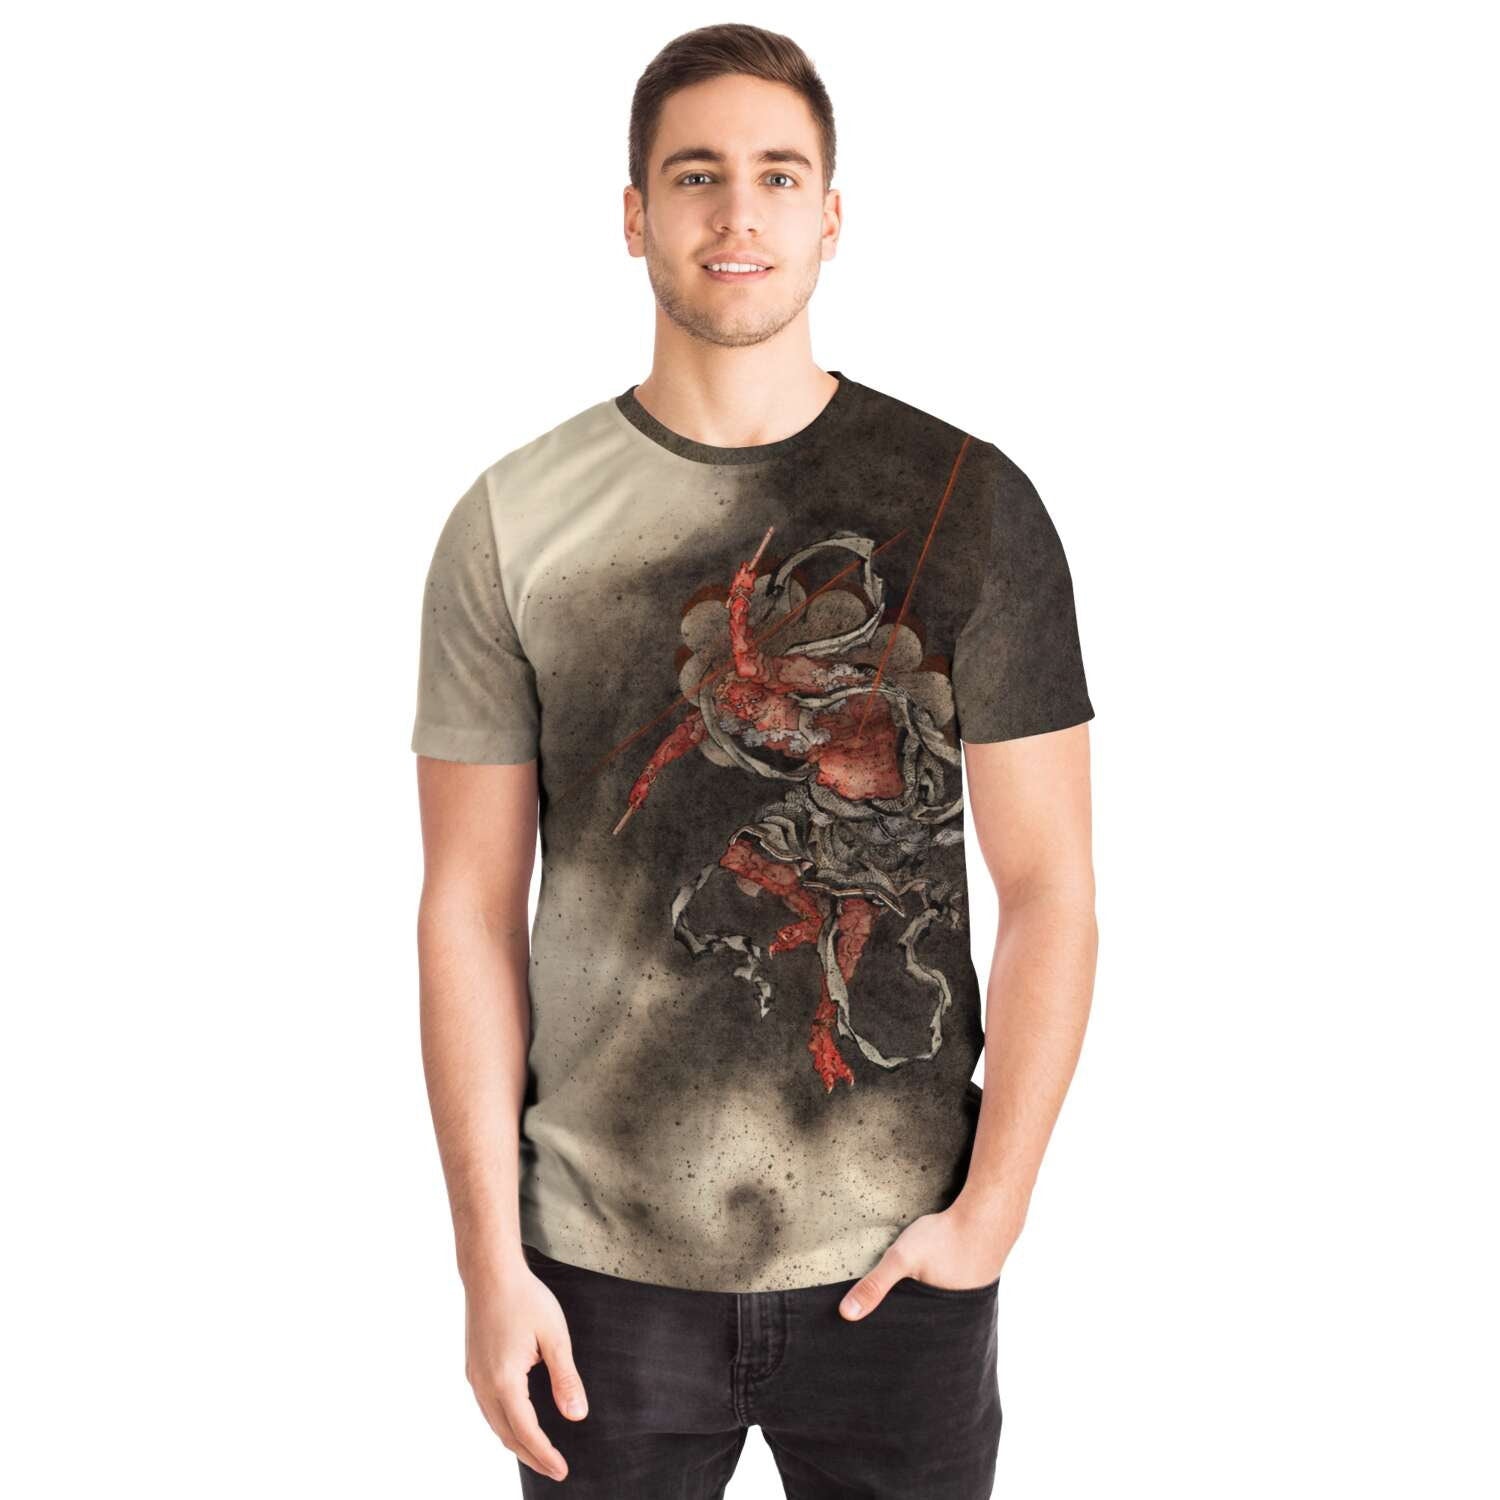 T-shirt Raijin (Raiden) Thunder, Lightning, and Storm God | Shinto Deity | Hokusai Japanese Mythology Graphic T-Shirt Tee